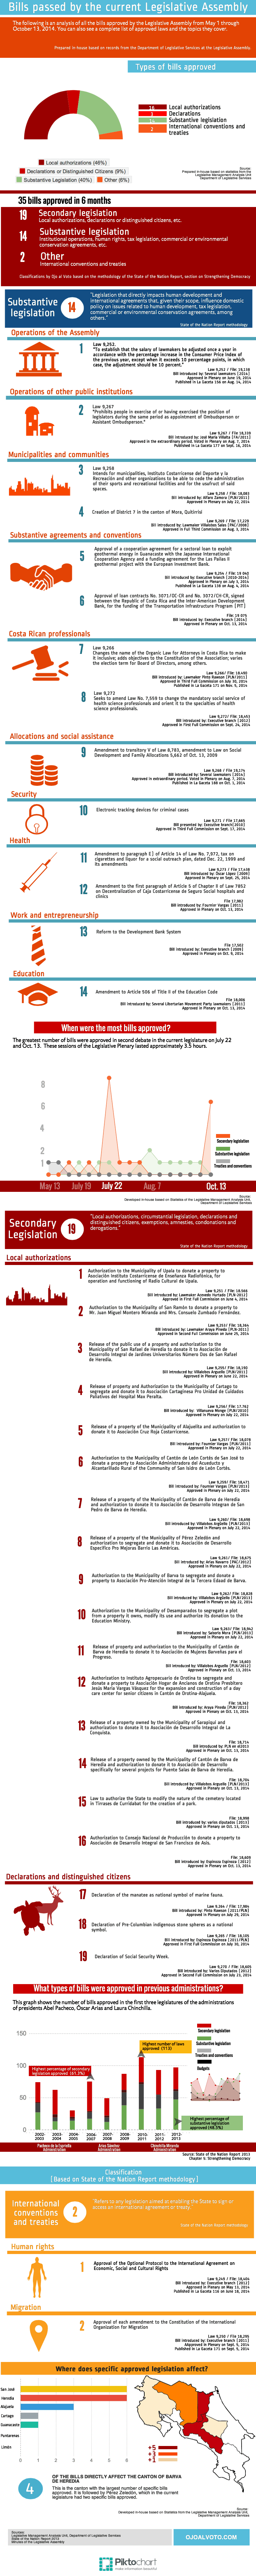 LegislativeBills